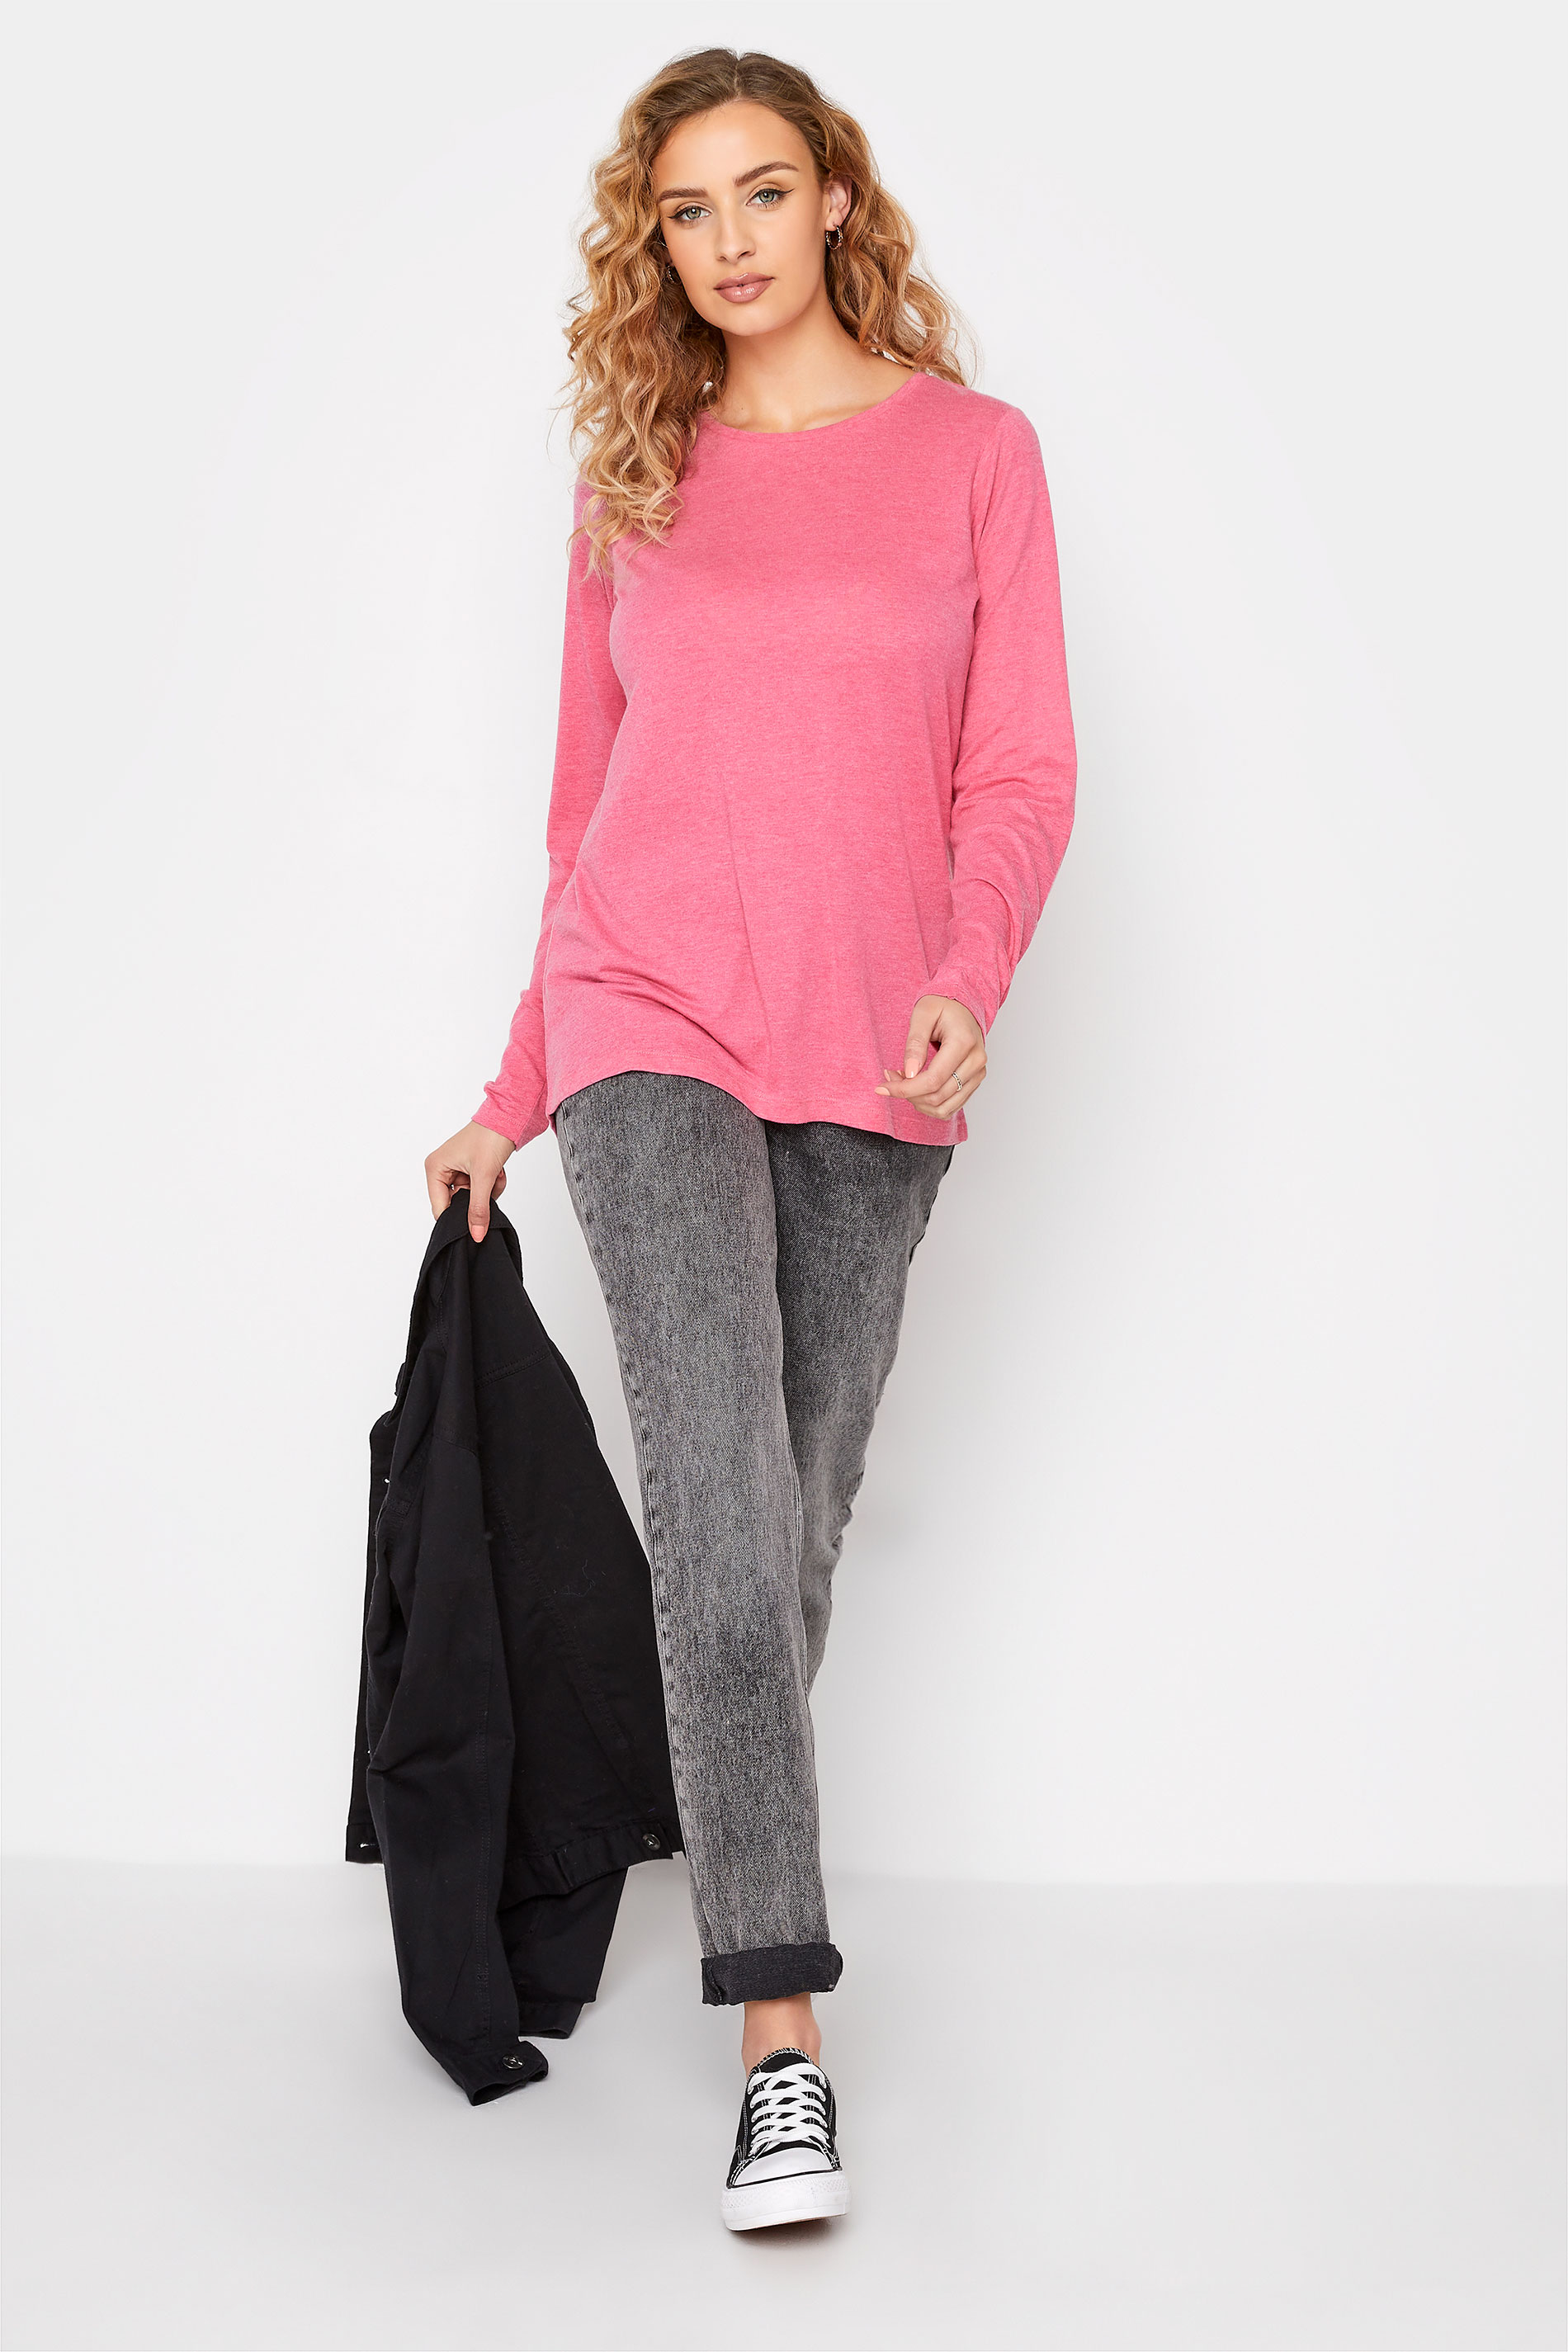 LTS Tall Women's Pink Marl Long Sleeve T-Shirt